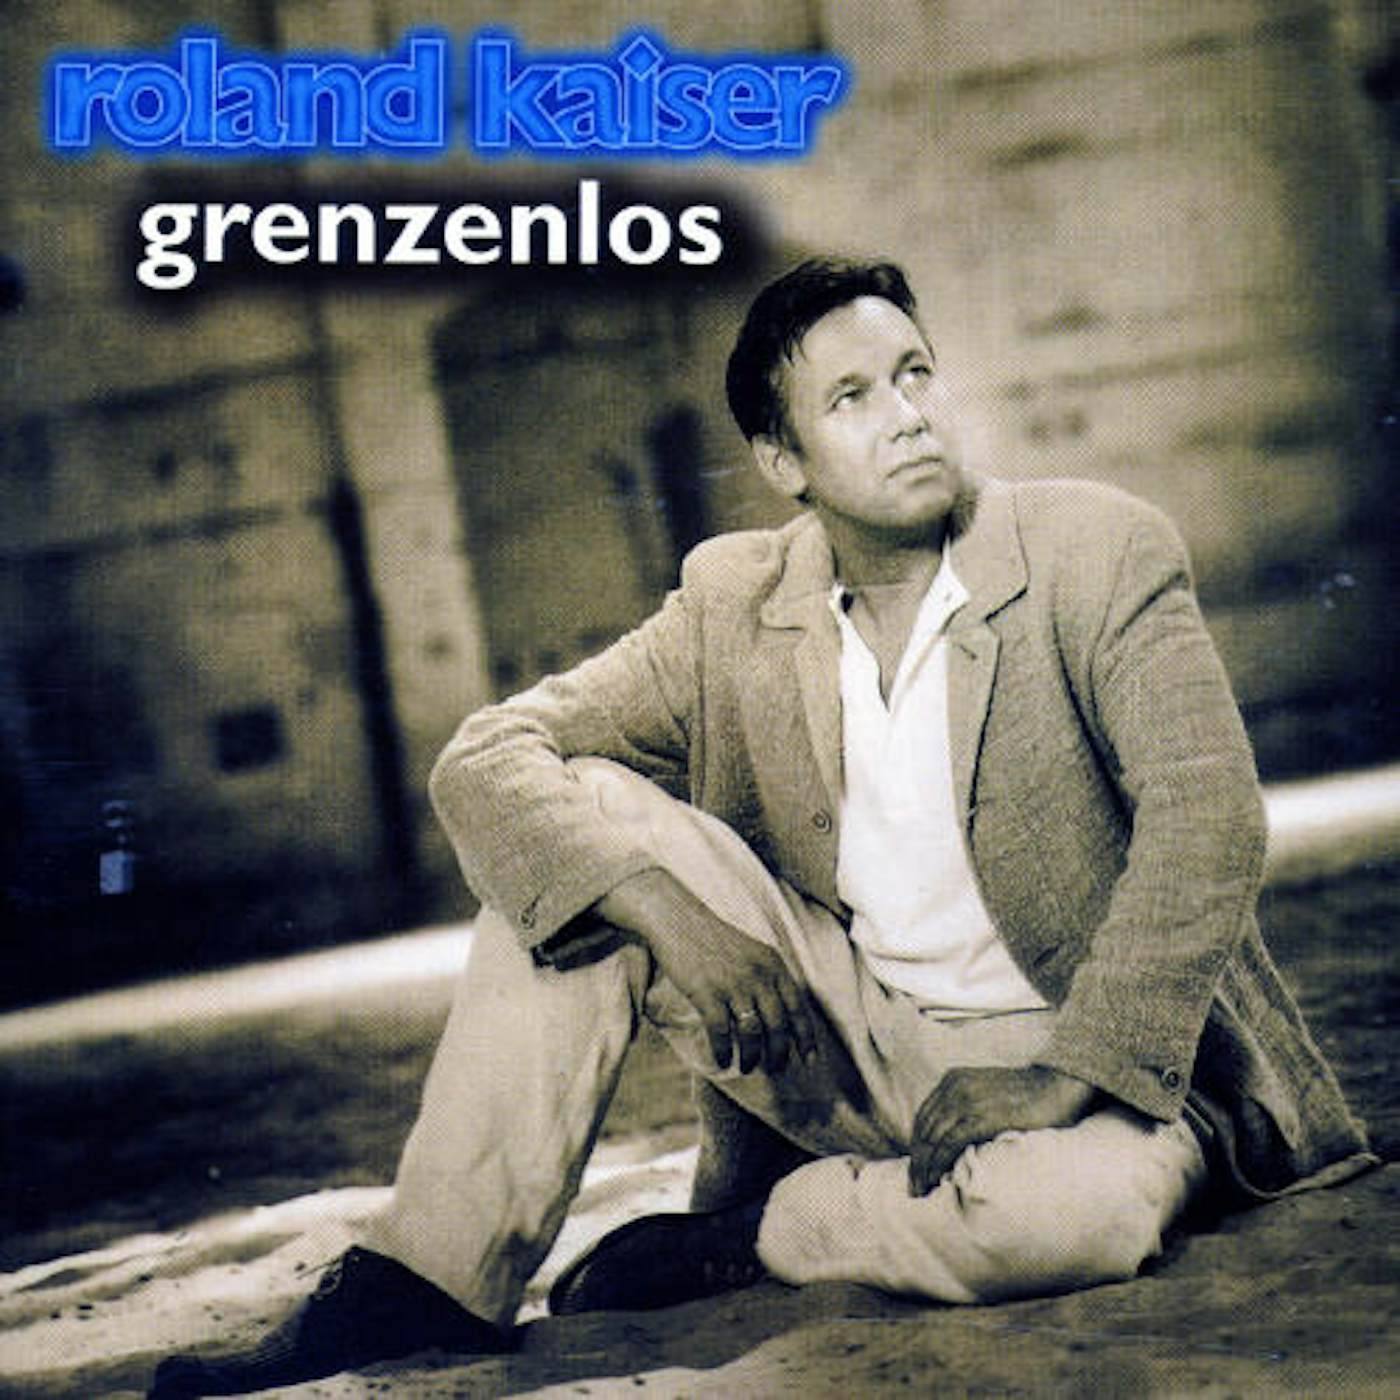 Roland Kaiser GRENZENLOS CD